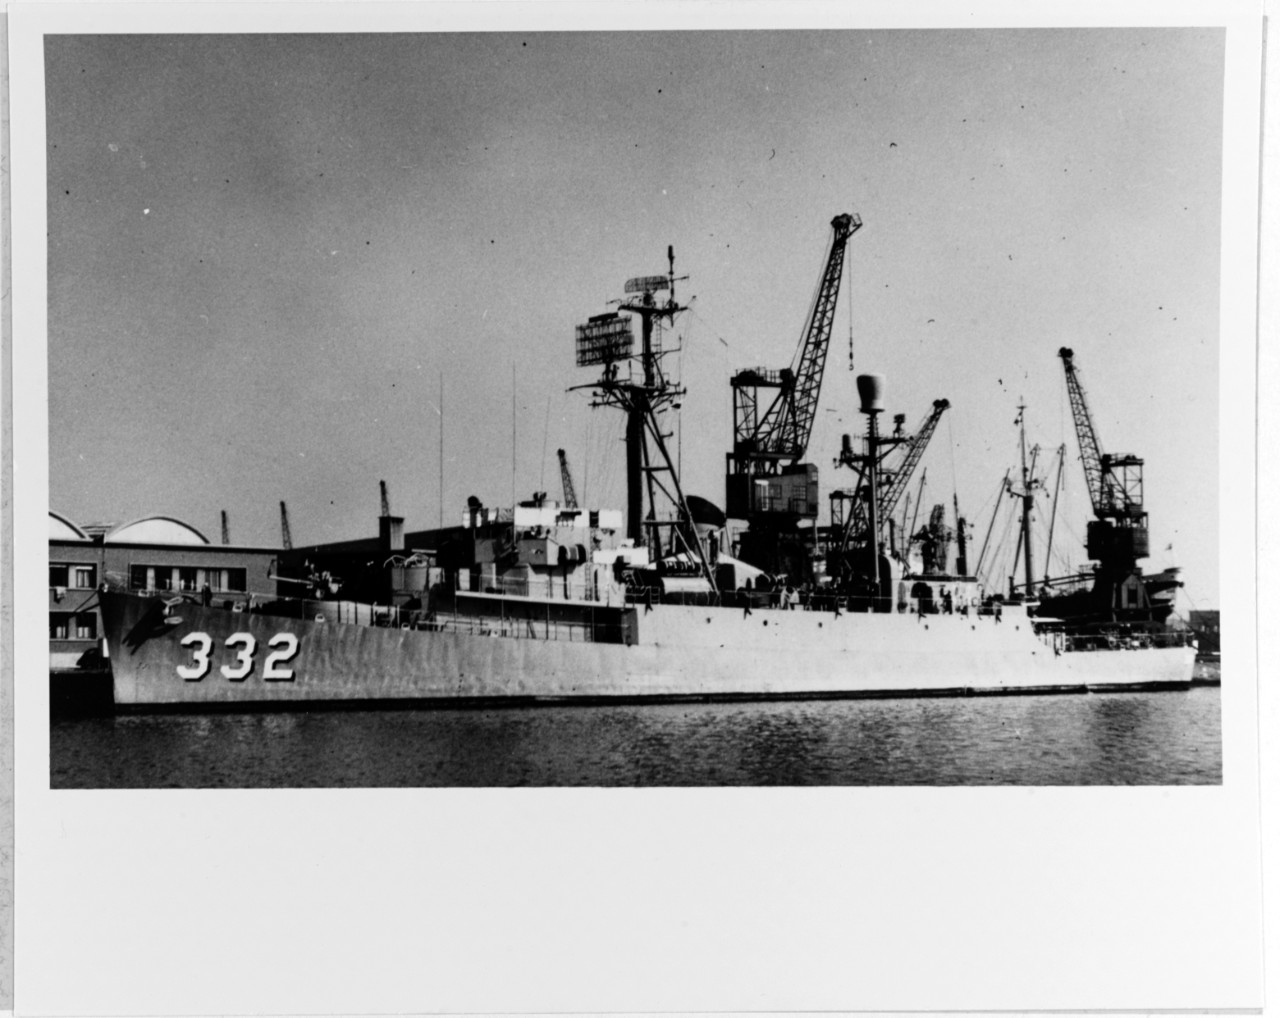 USS PRICE (DER-332)